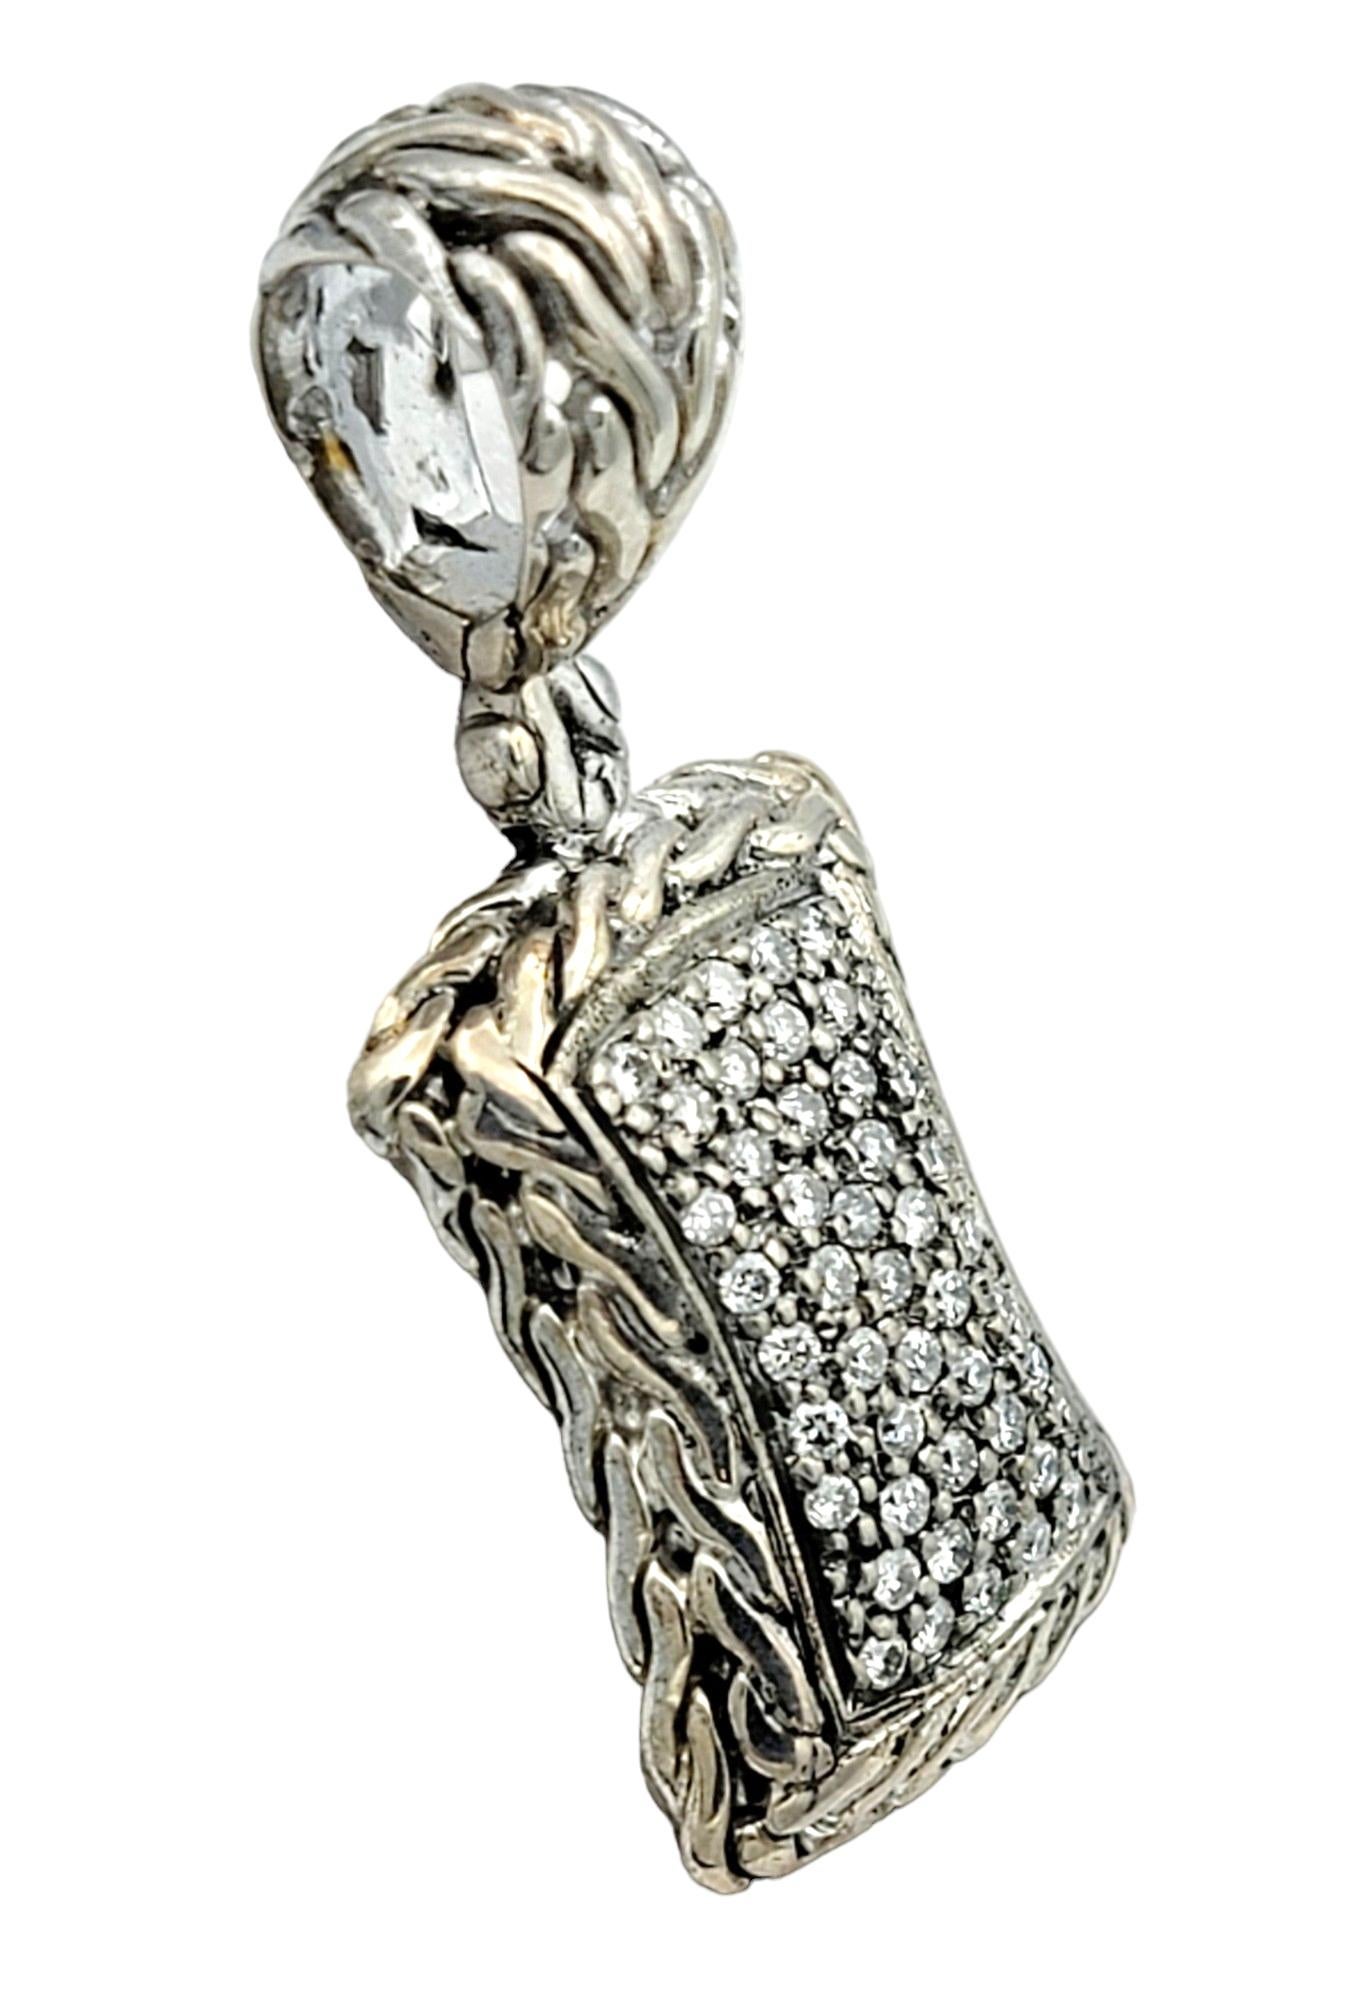 Fabriqué avec une attention méticuleuse aux détails, ce pendentif John Hardy respire la sophistication et l'élégance. Fabriqué en argent sterling brillant, le pendentif présente une forme rectangulaire élégante ornée de diamants éblouissants. En son